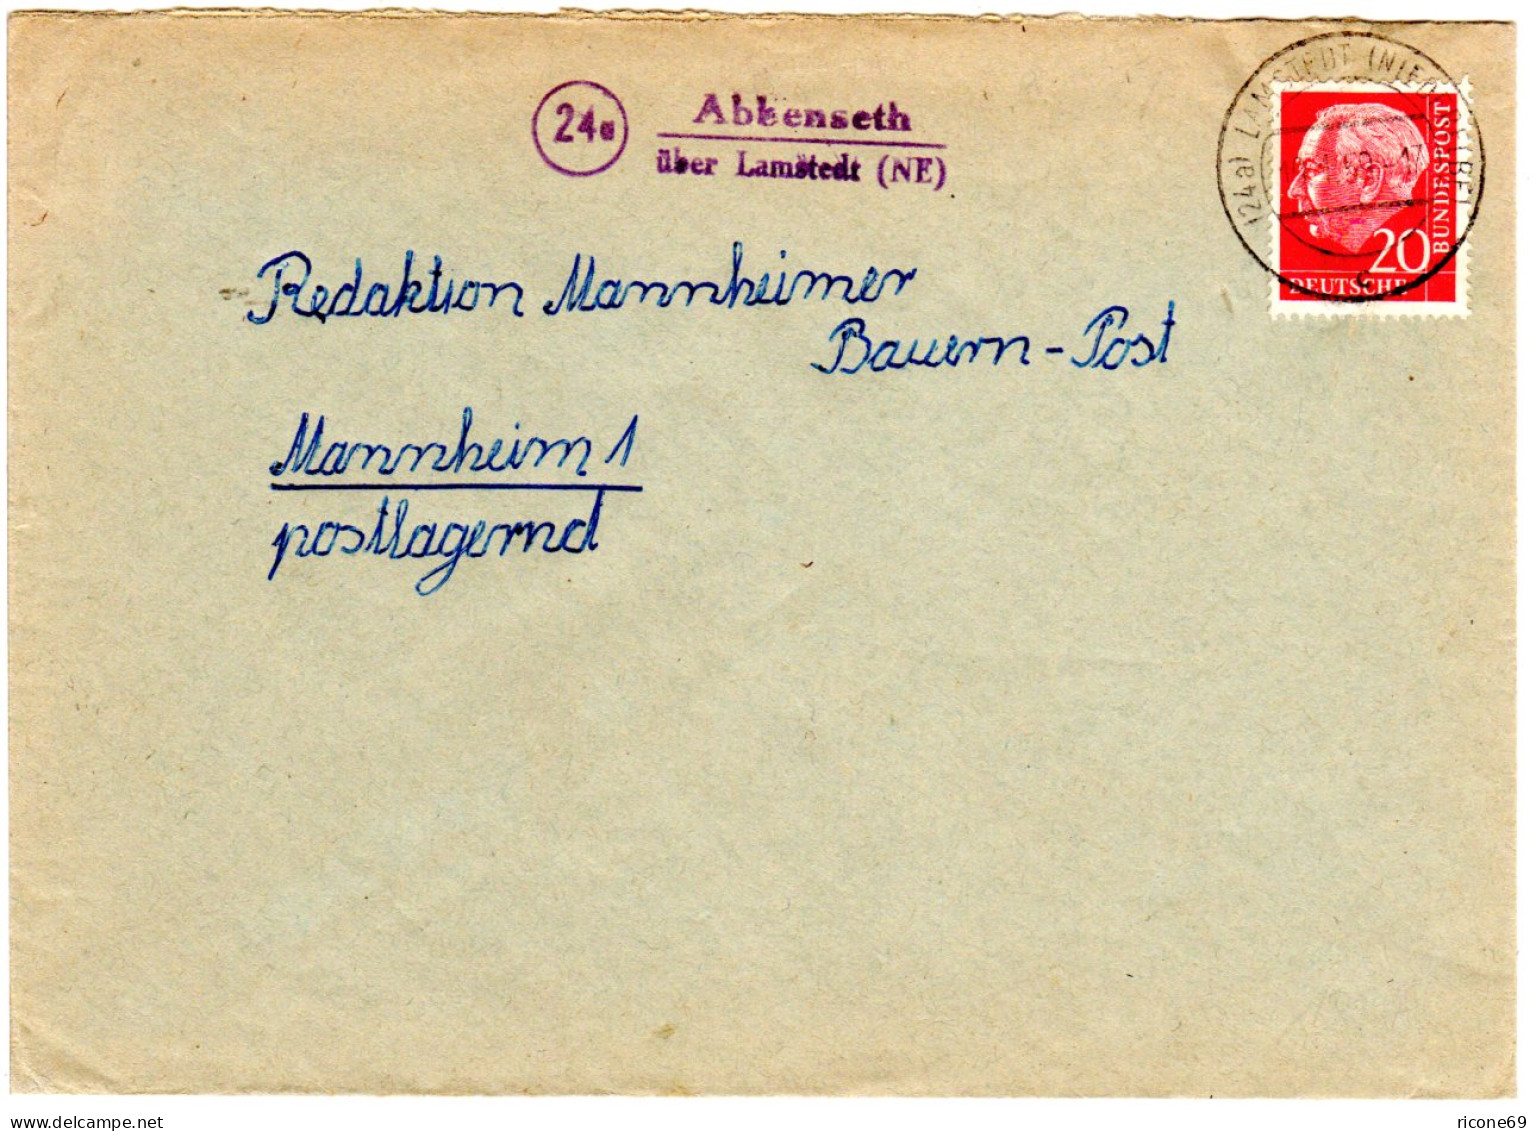 BRD 1959, Landpost Stpl. 24a ABBENSETH über Lamstedt (NE) Auf Brief M. 20 Pf. - Sammlungen